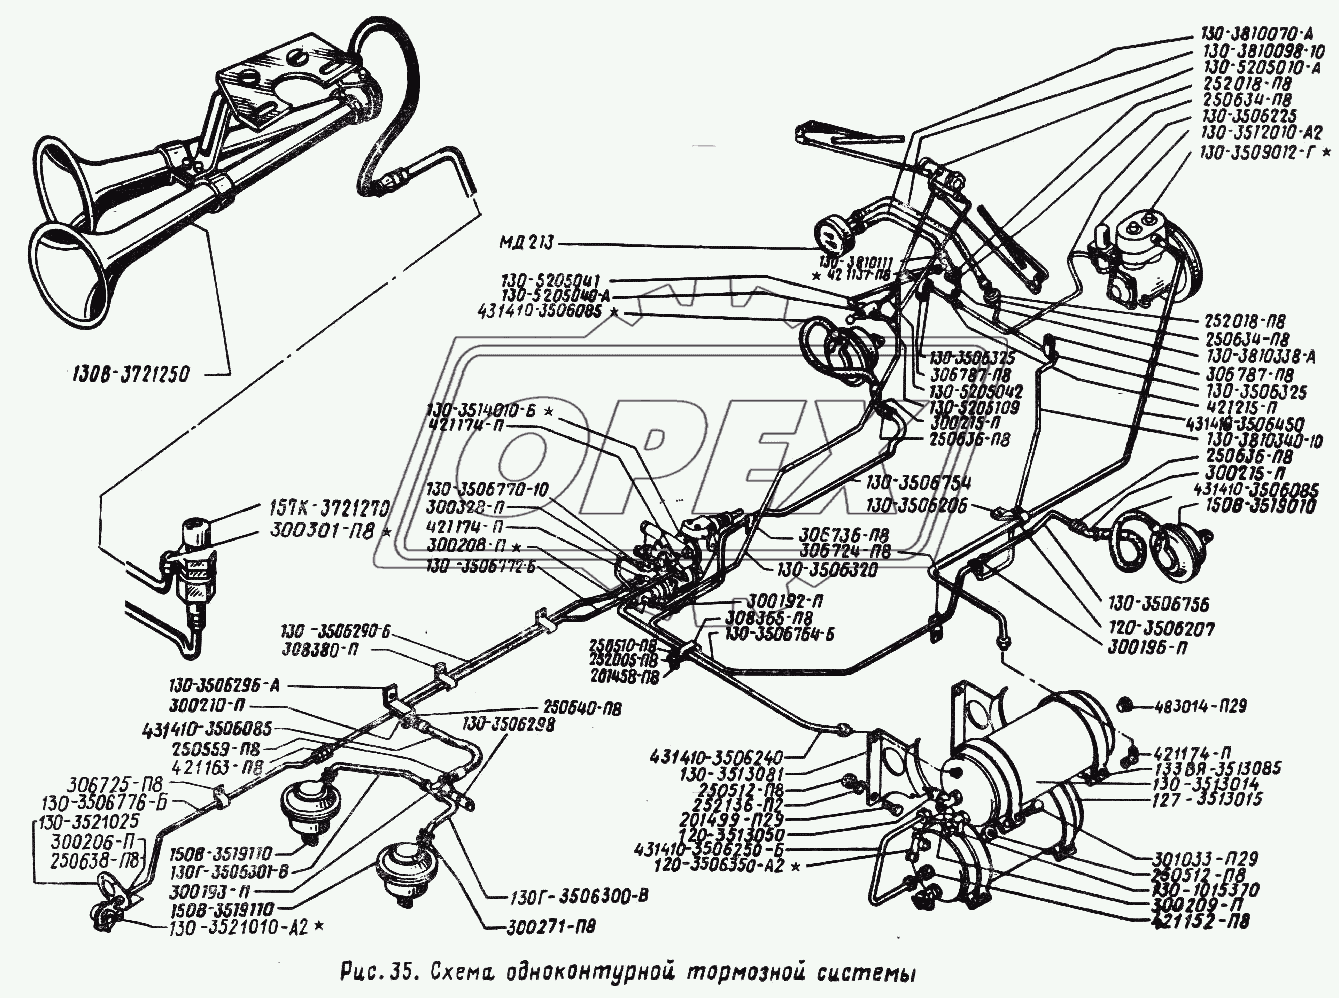 Схема одноконтурной тормозной системы